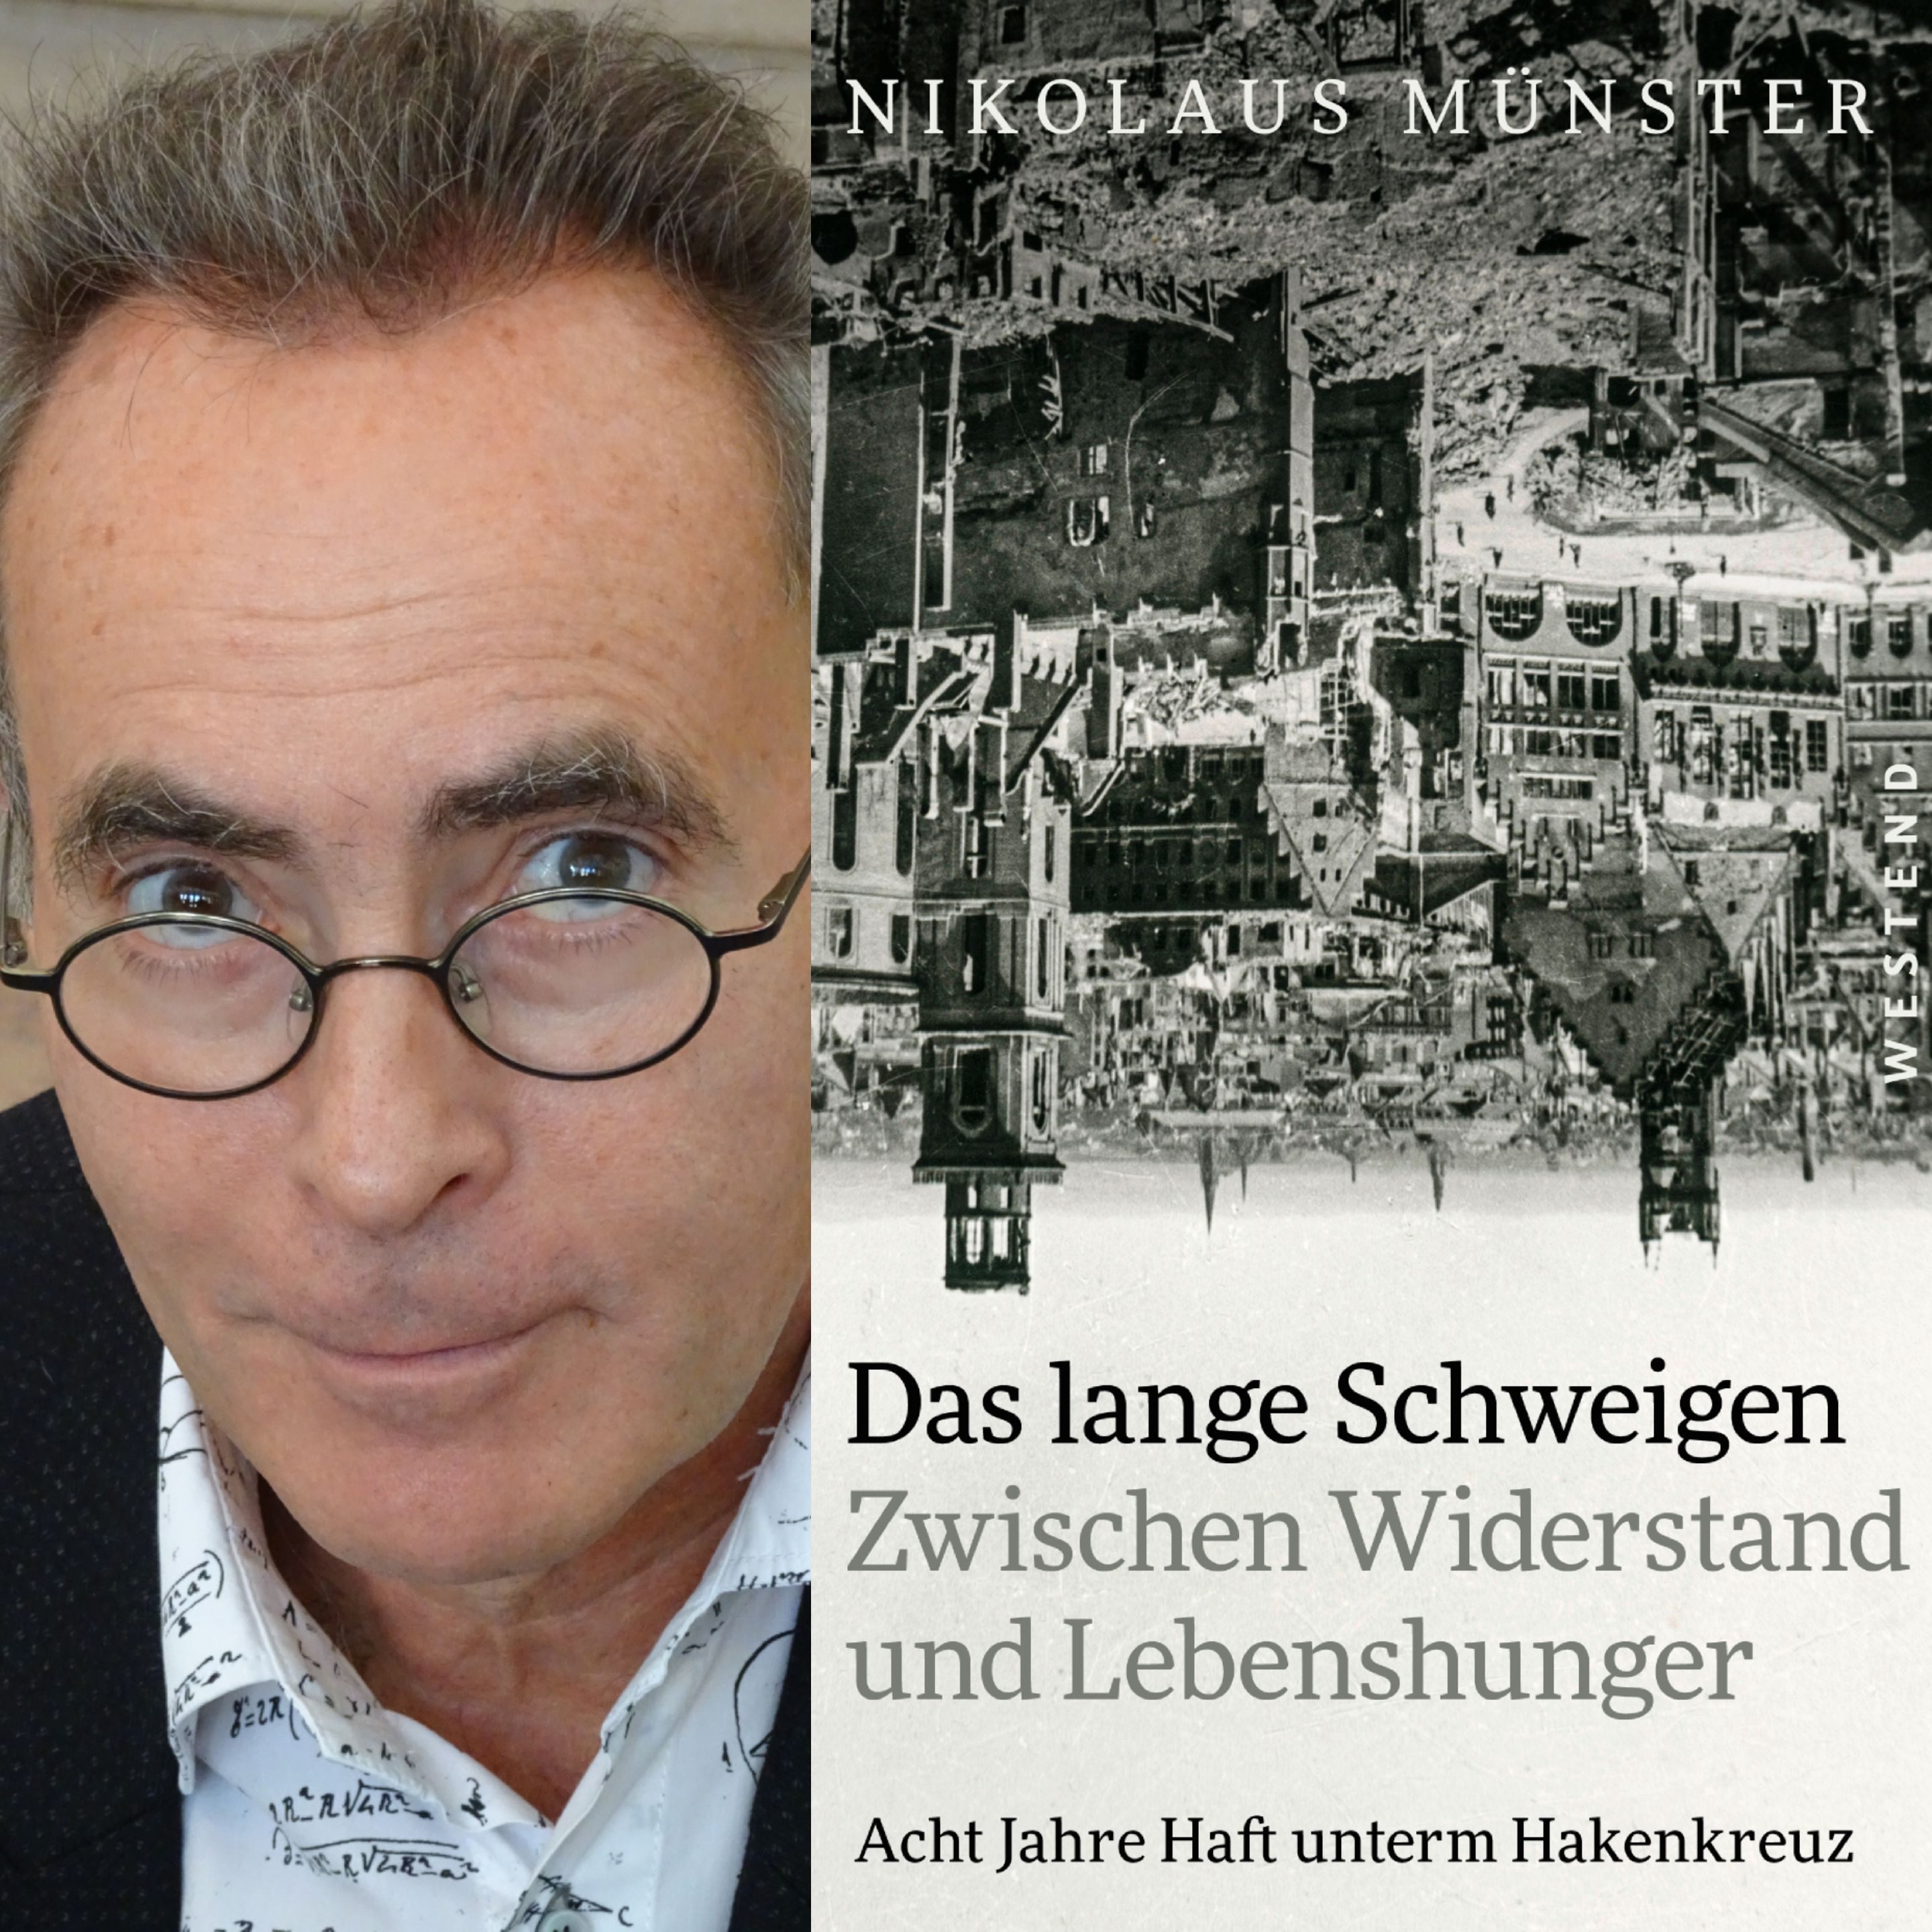 Autor Nikolaus Münster / Titelbild von "Das lange Schweigen"